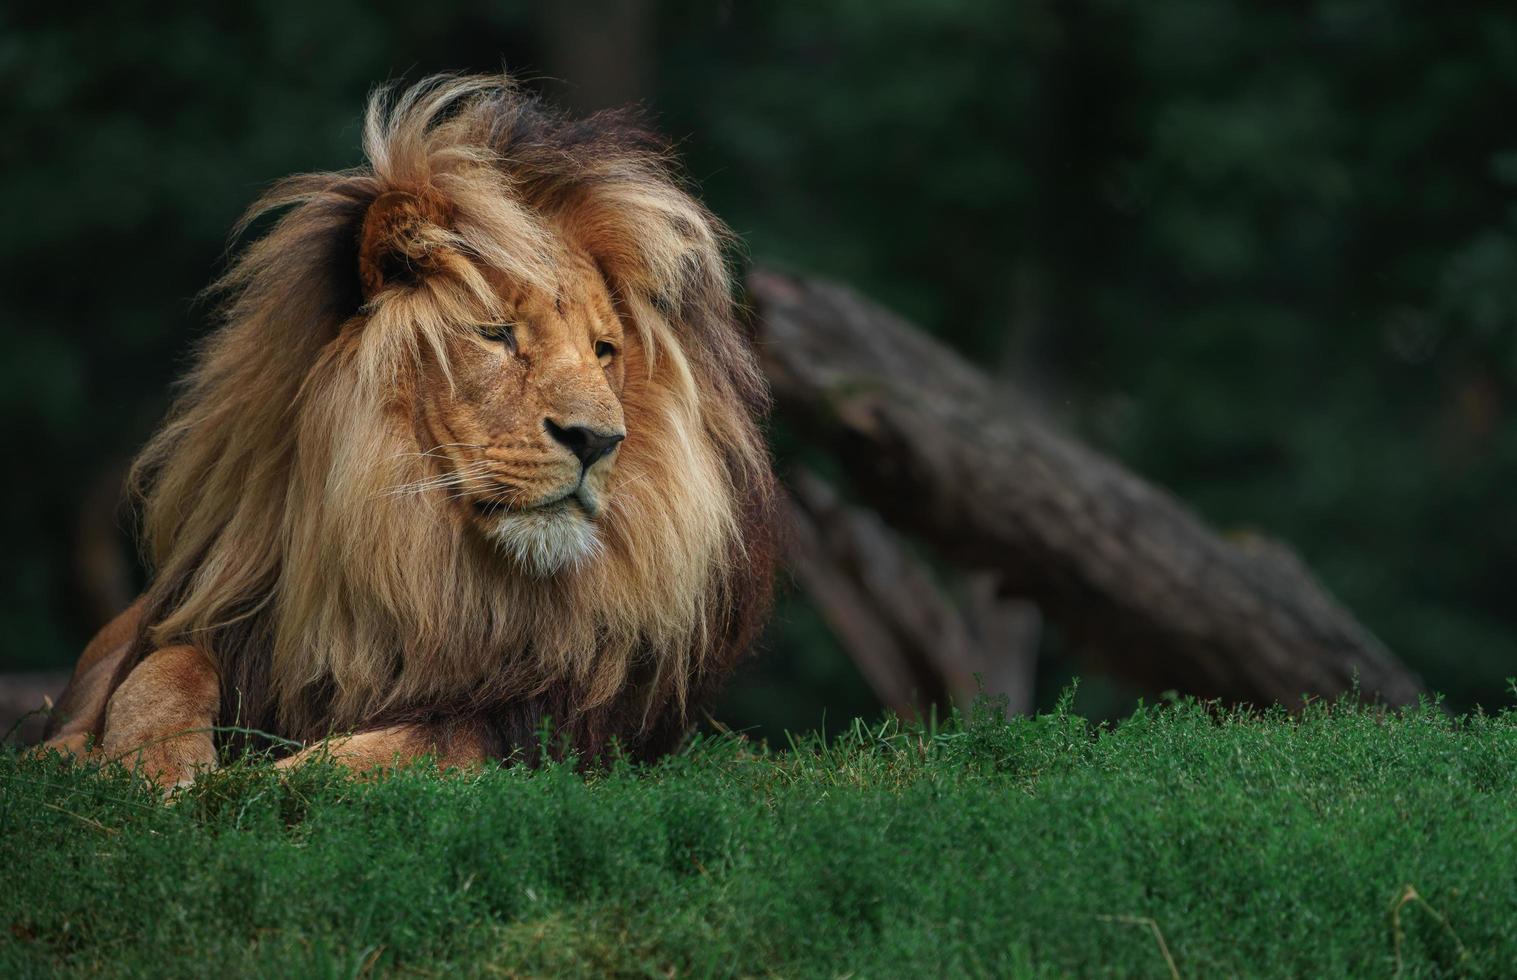 león katanga en pasto foto